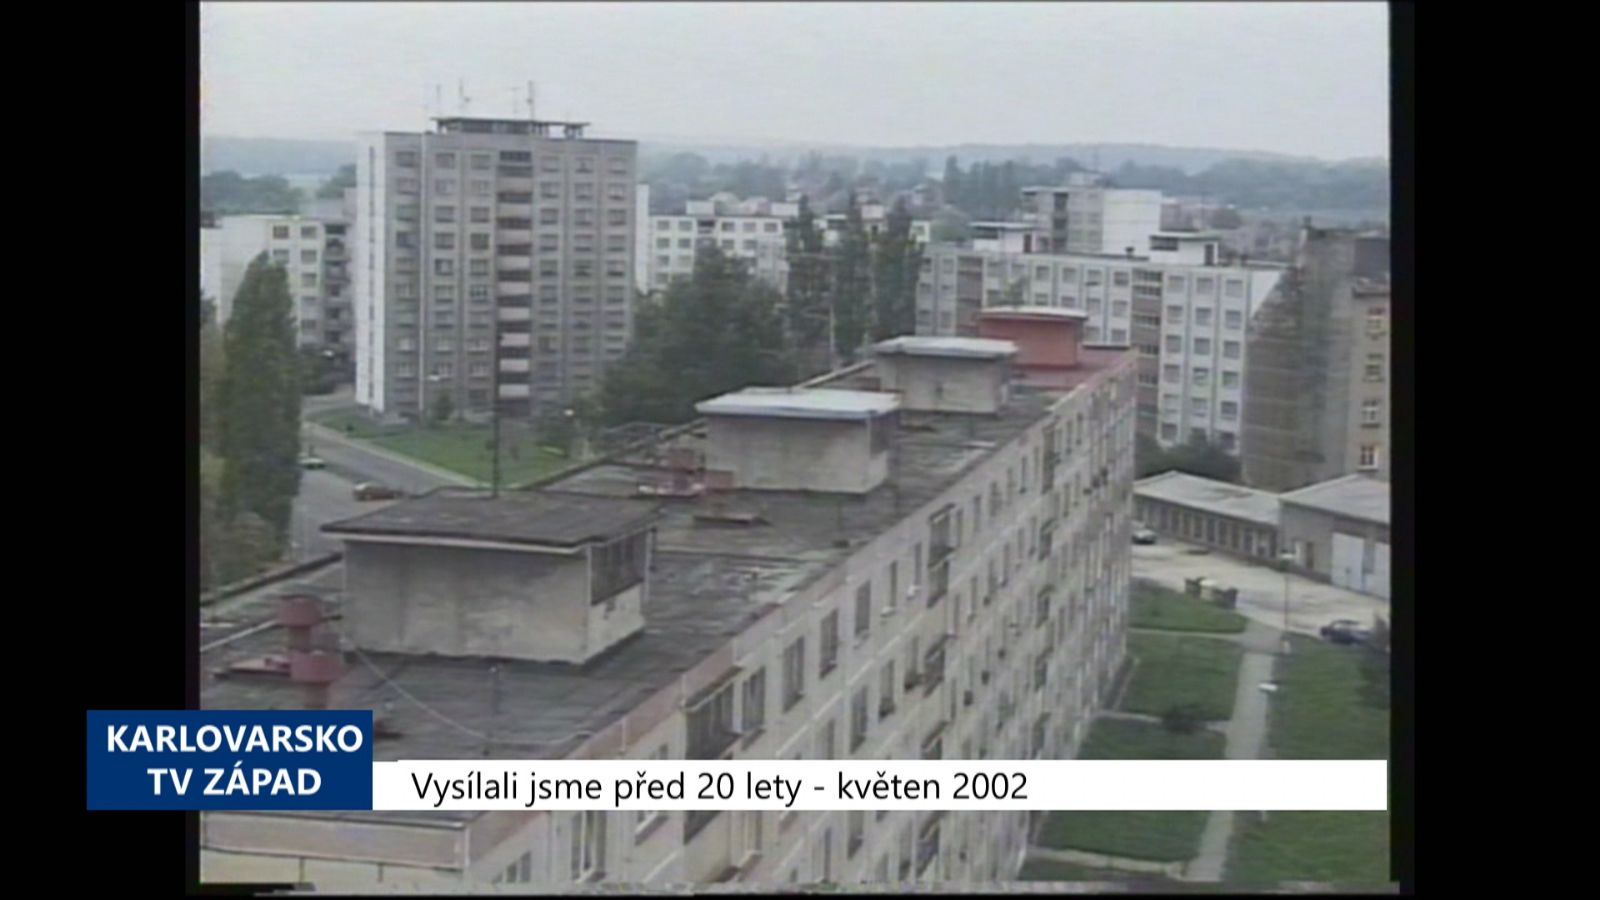 2002 – Cheb: Volné byty v privatizovaných domech se prodají (TV Západ)